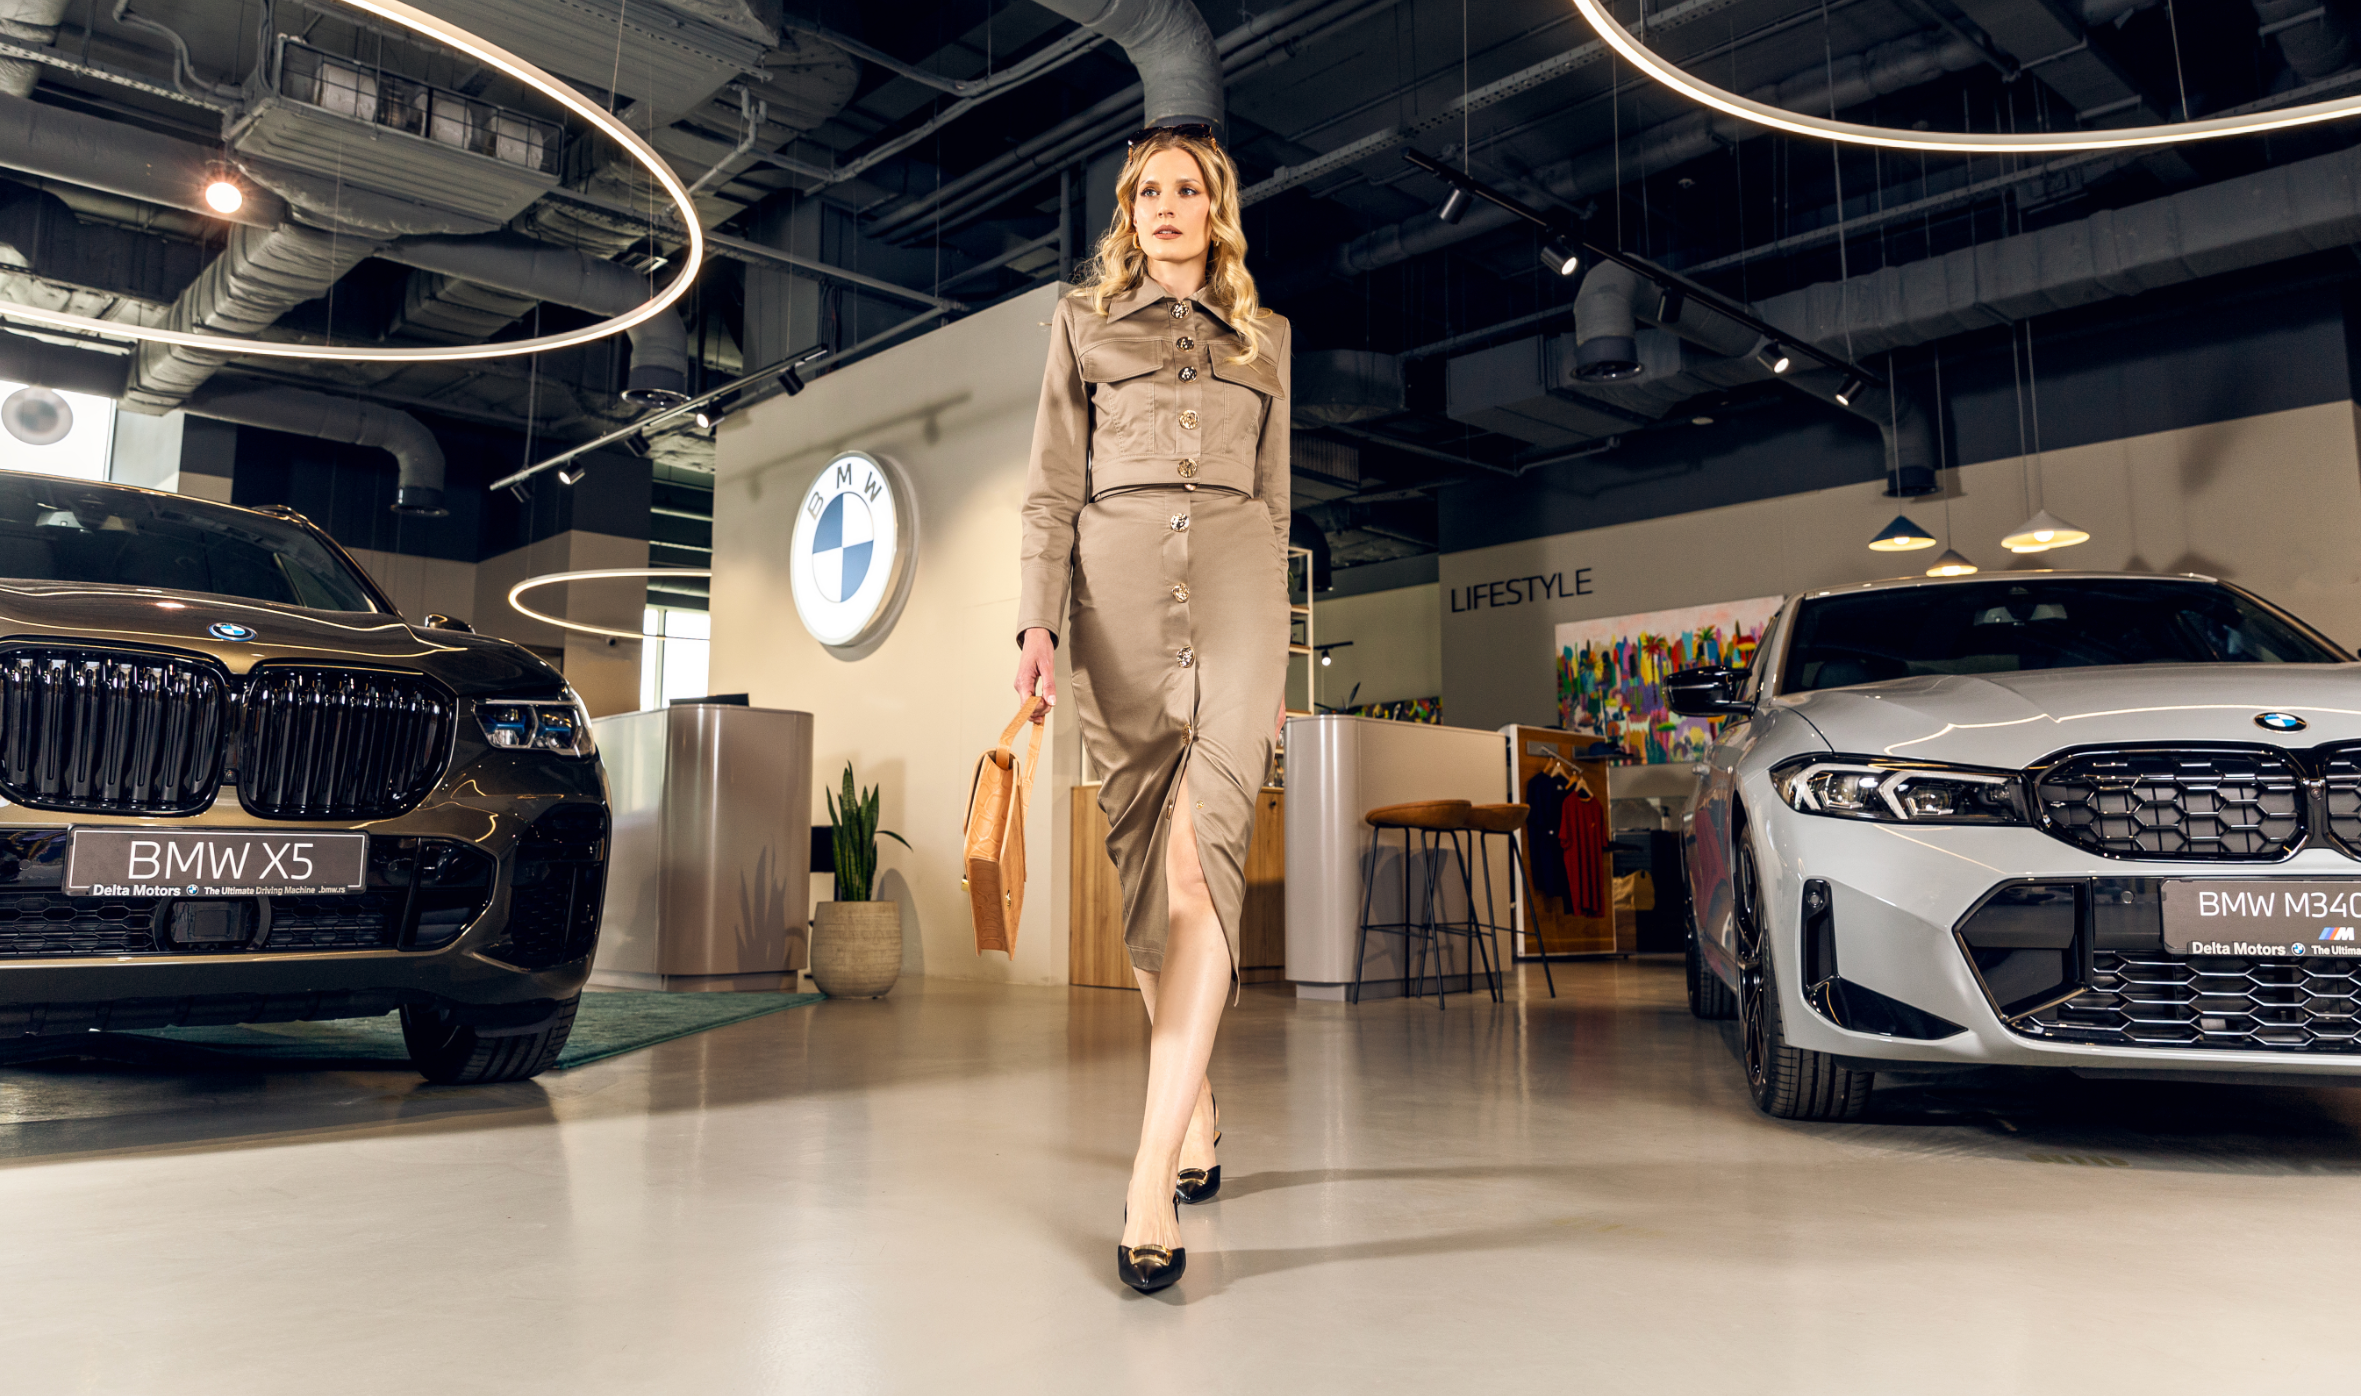 Mask Group 286 Otvaramo vrata nove dimenzije luksuza: The BMW Store   ekskluzivni BMW automobili i Lifestyle program za besprekorno iskustvo